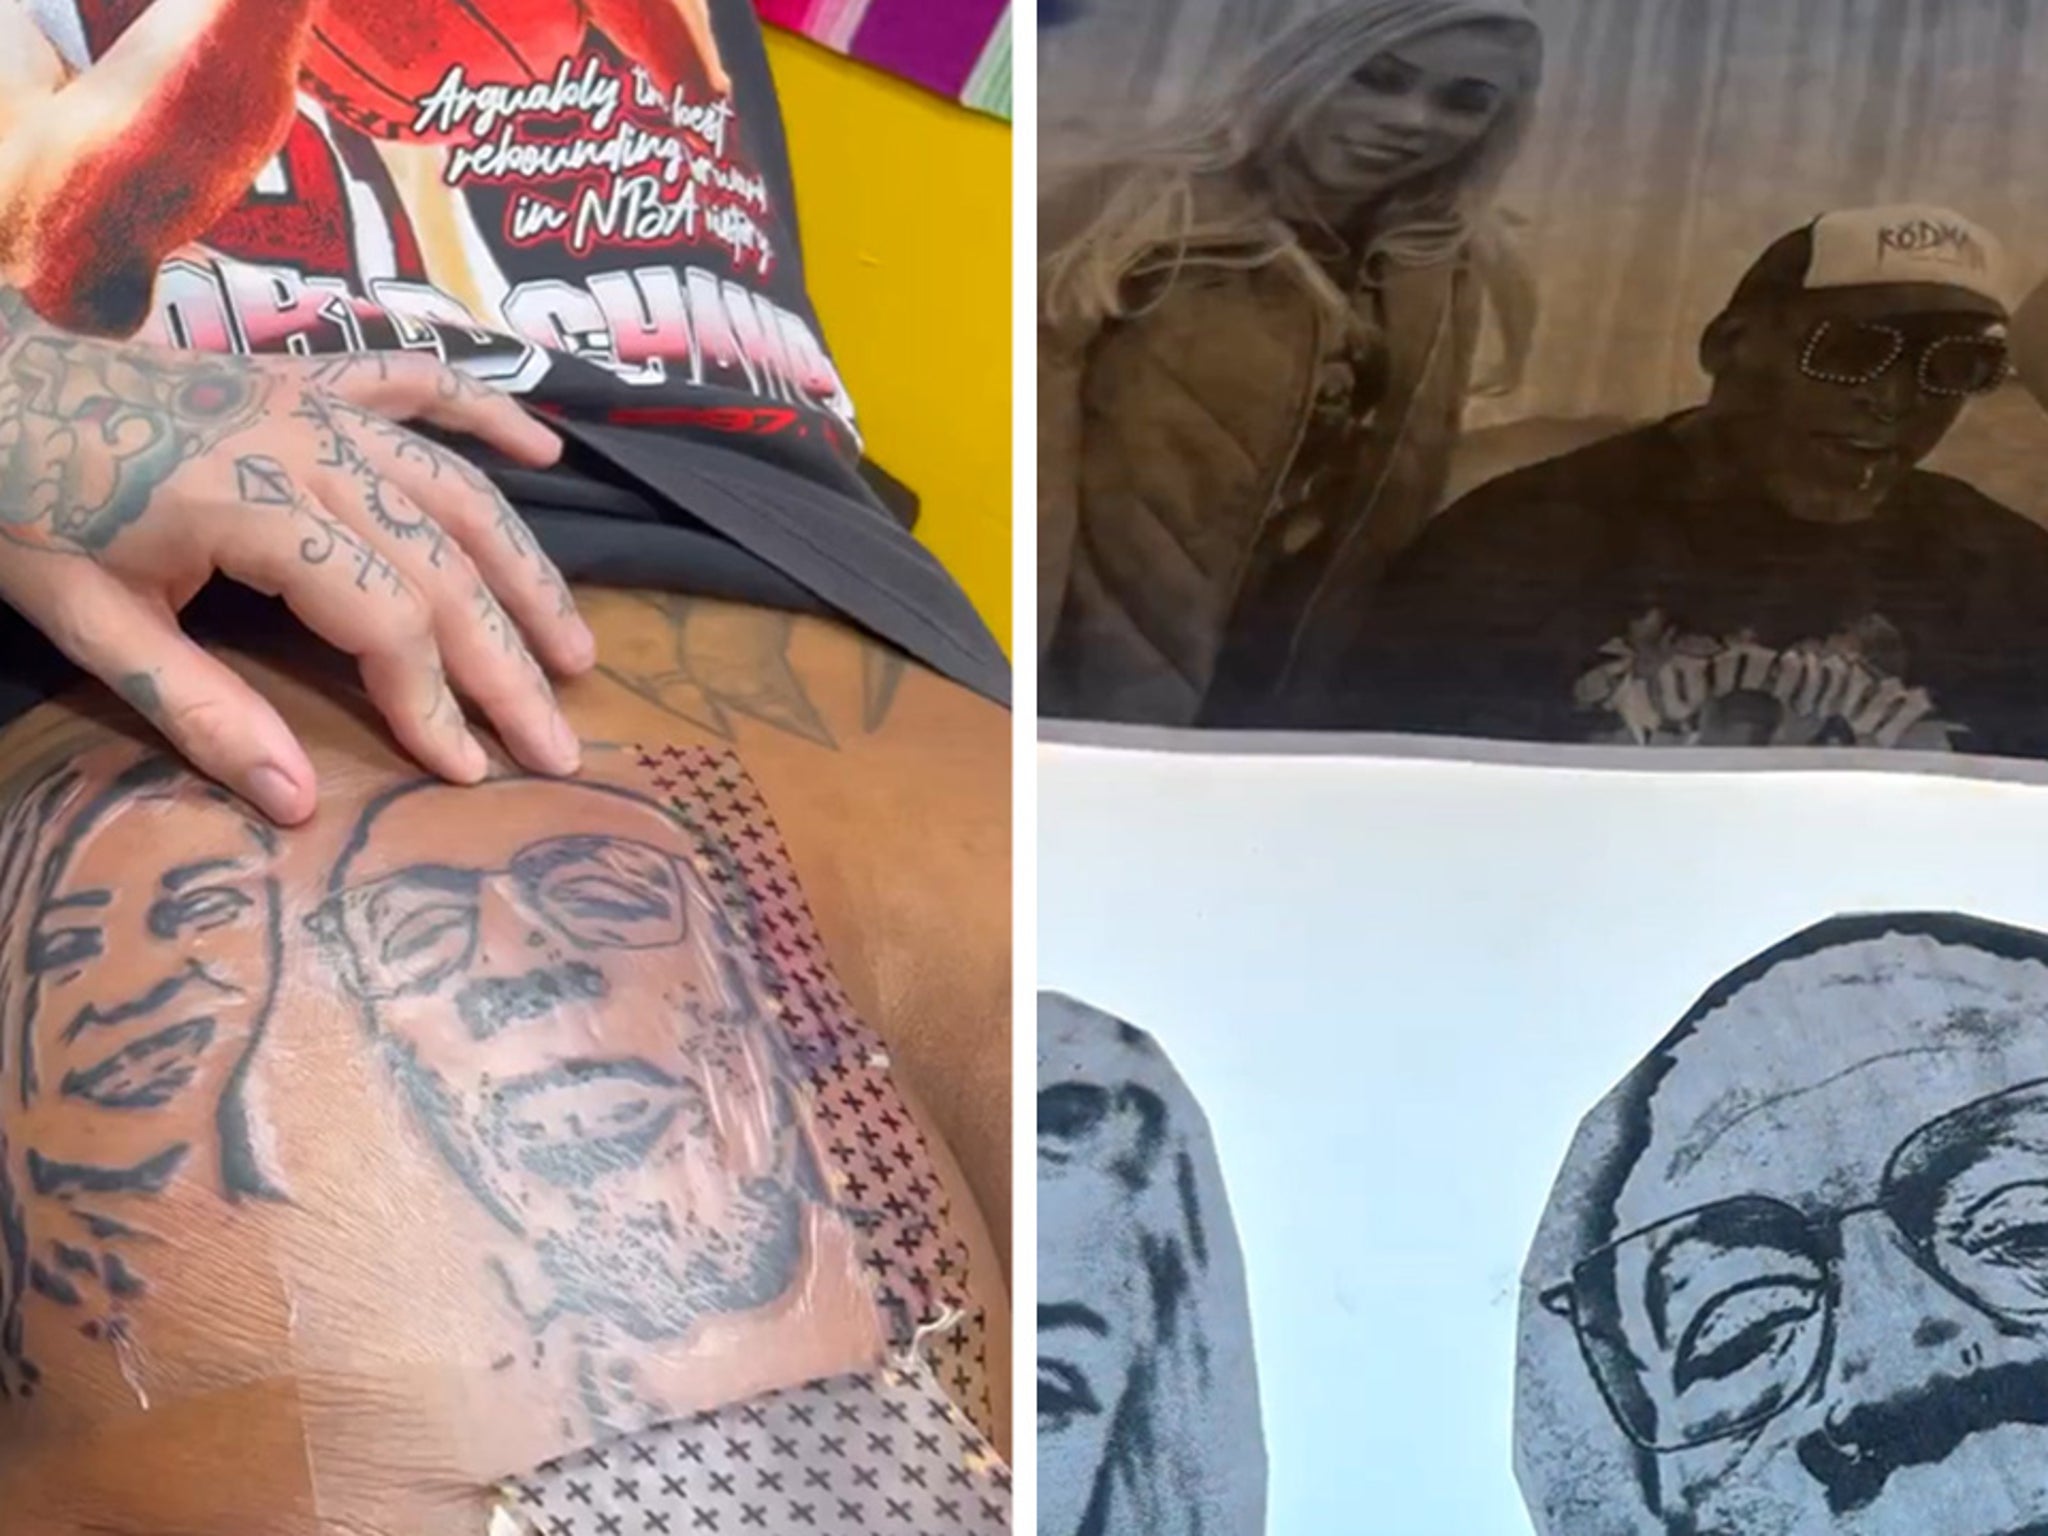 Dennis Rodman Tattoos Girlfriend's Face On Butt, Adds Self Portrait Too